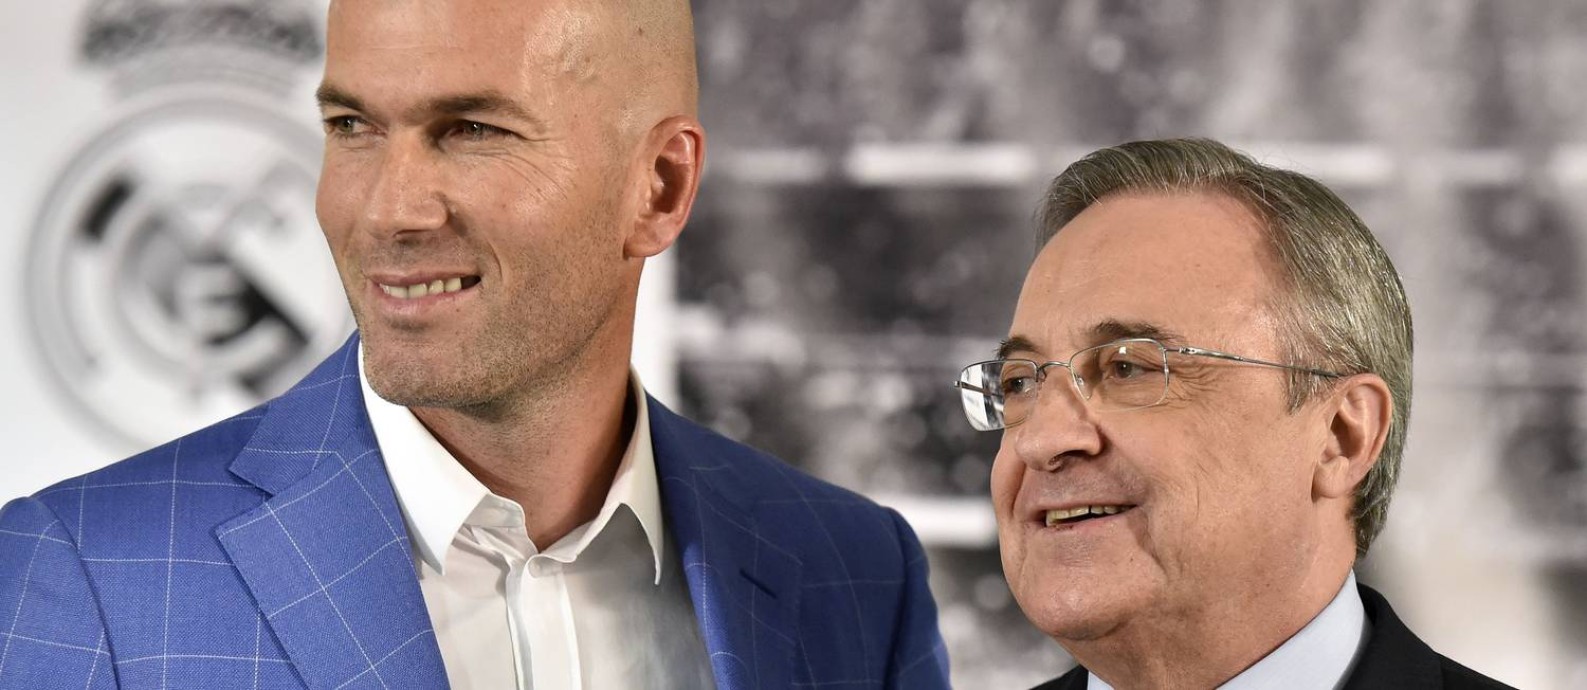 O técnico do Real Madrid, Zinedine Zidane, e o presidente do clube, Florentino Pérez, em janeiro de 2016 Foto: Gerard Julien / AFP